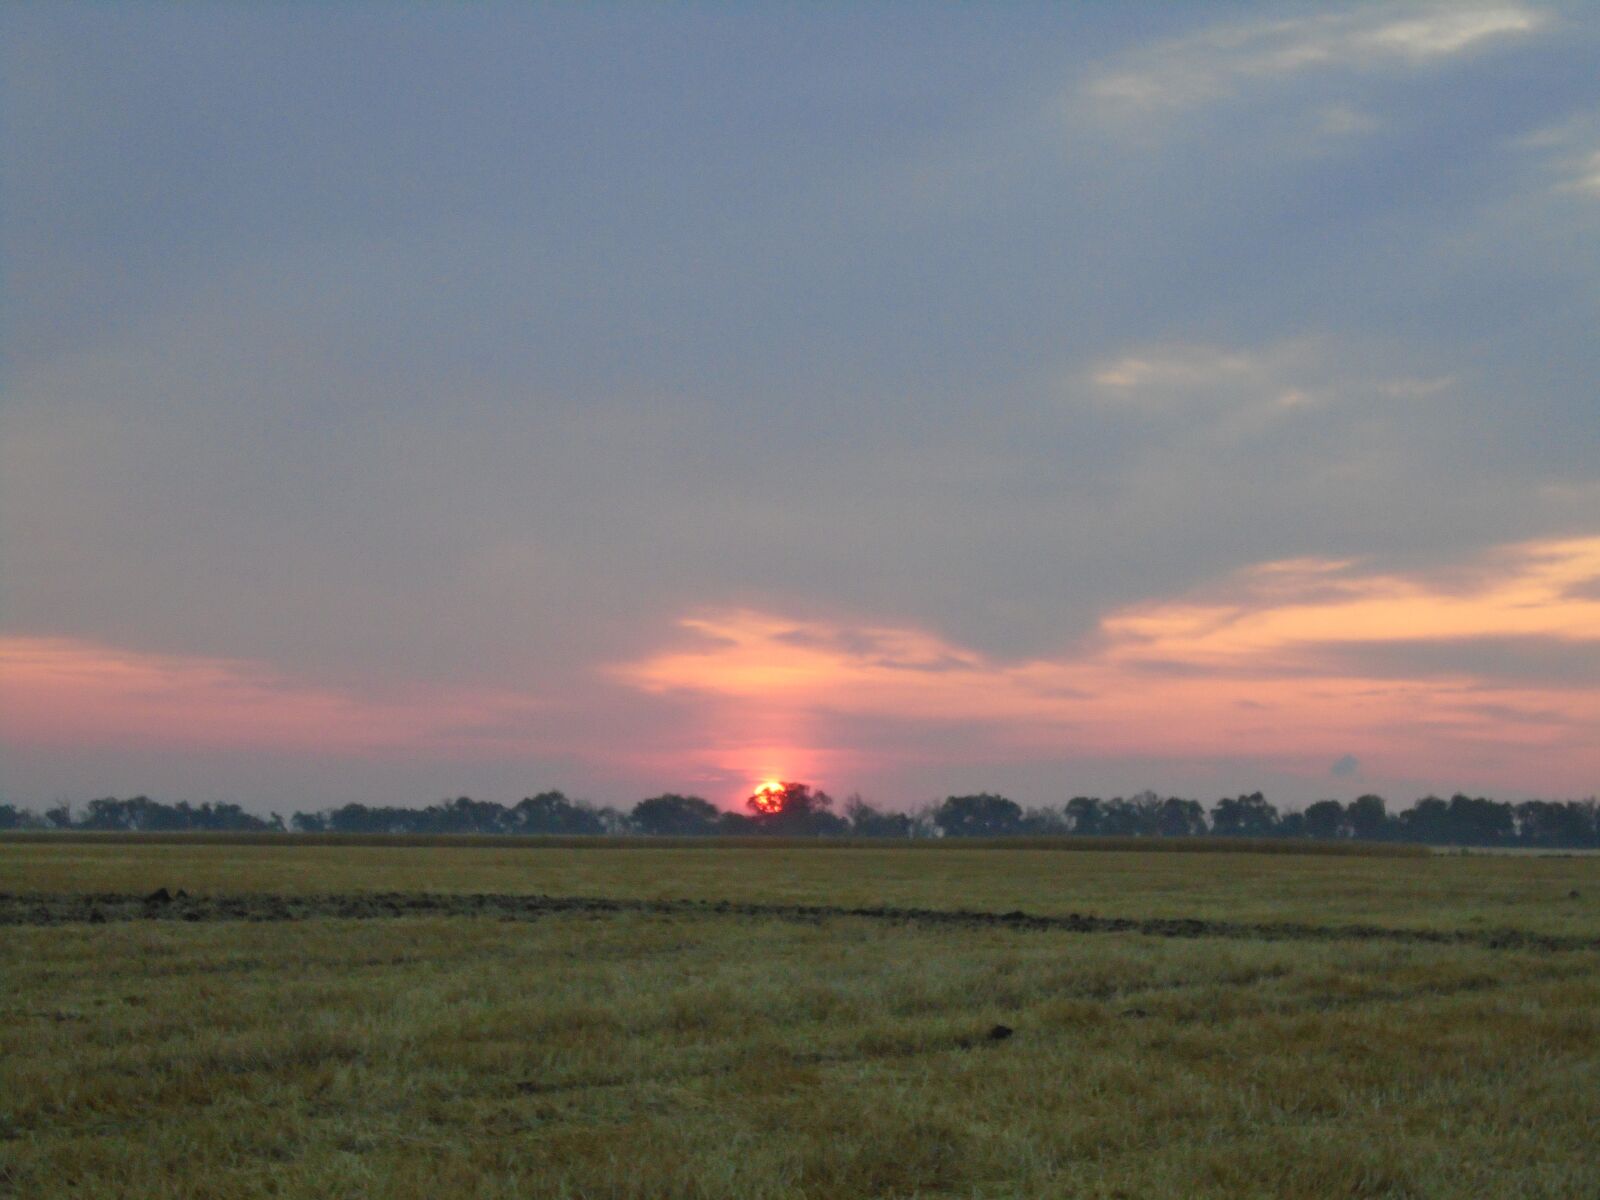 Sony Cyber-shot DSC-W800 sample photo. Sunset, field, sky photography